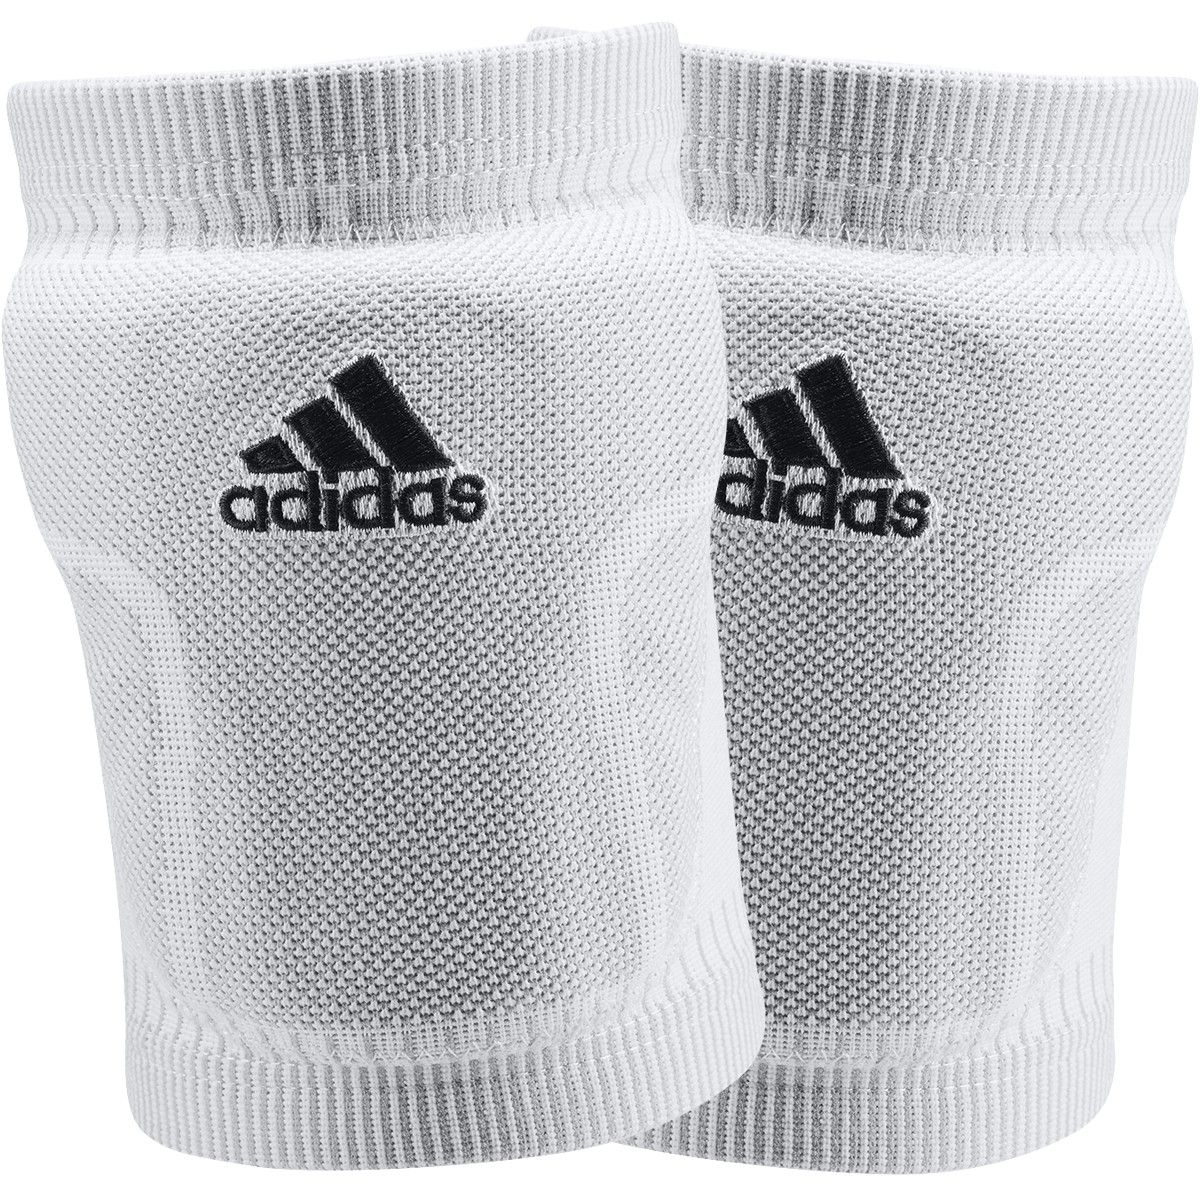 Adidas knee pads Primeknit White